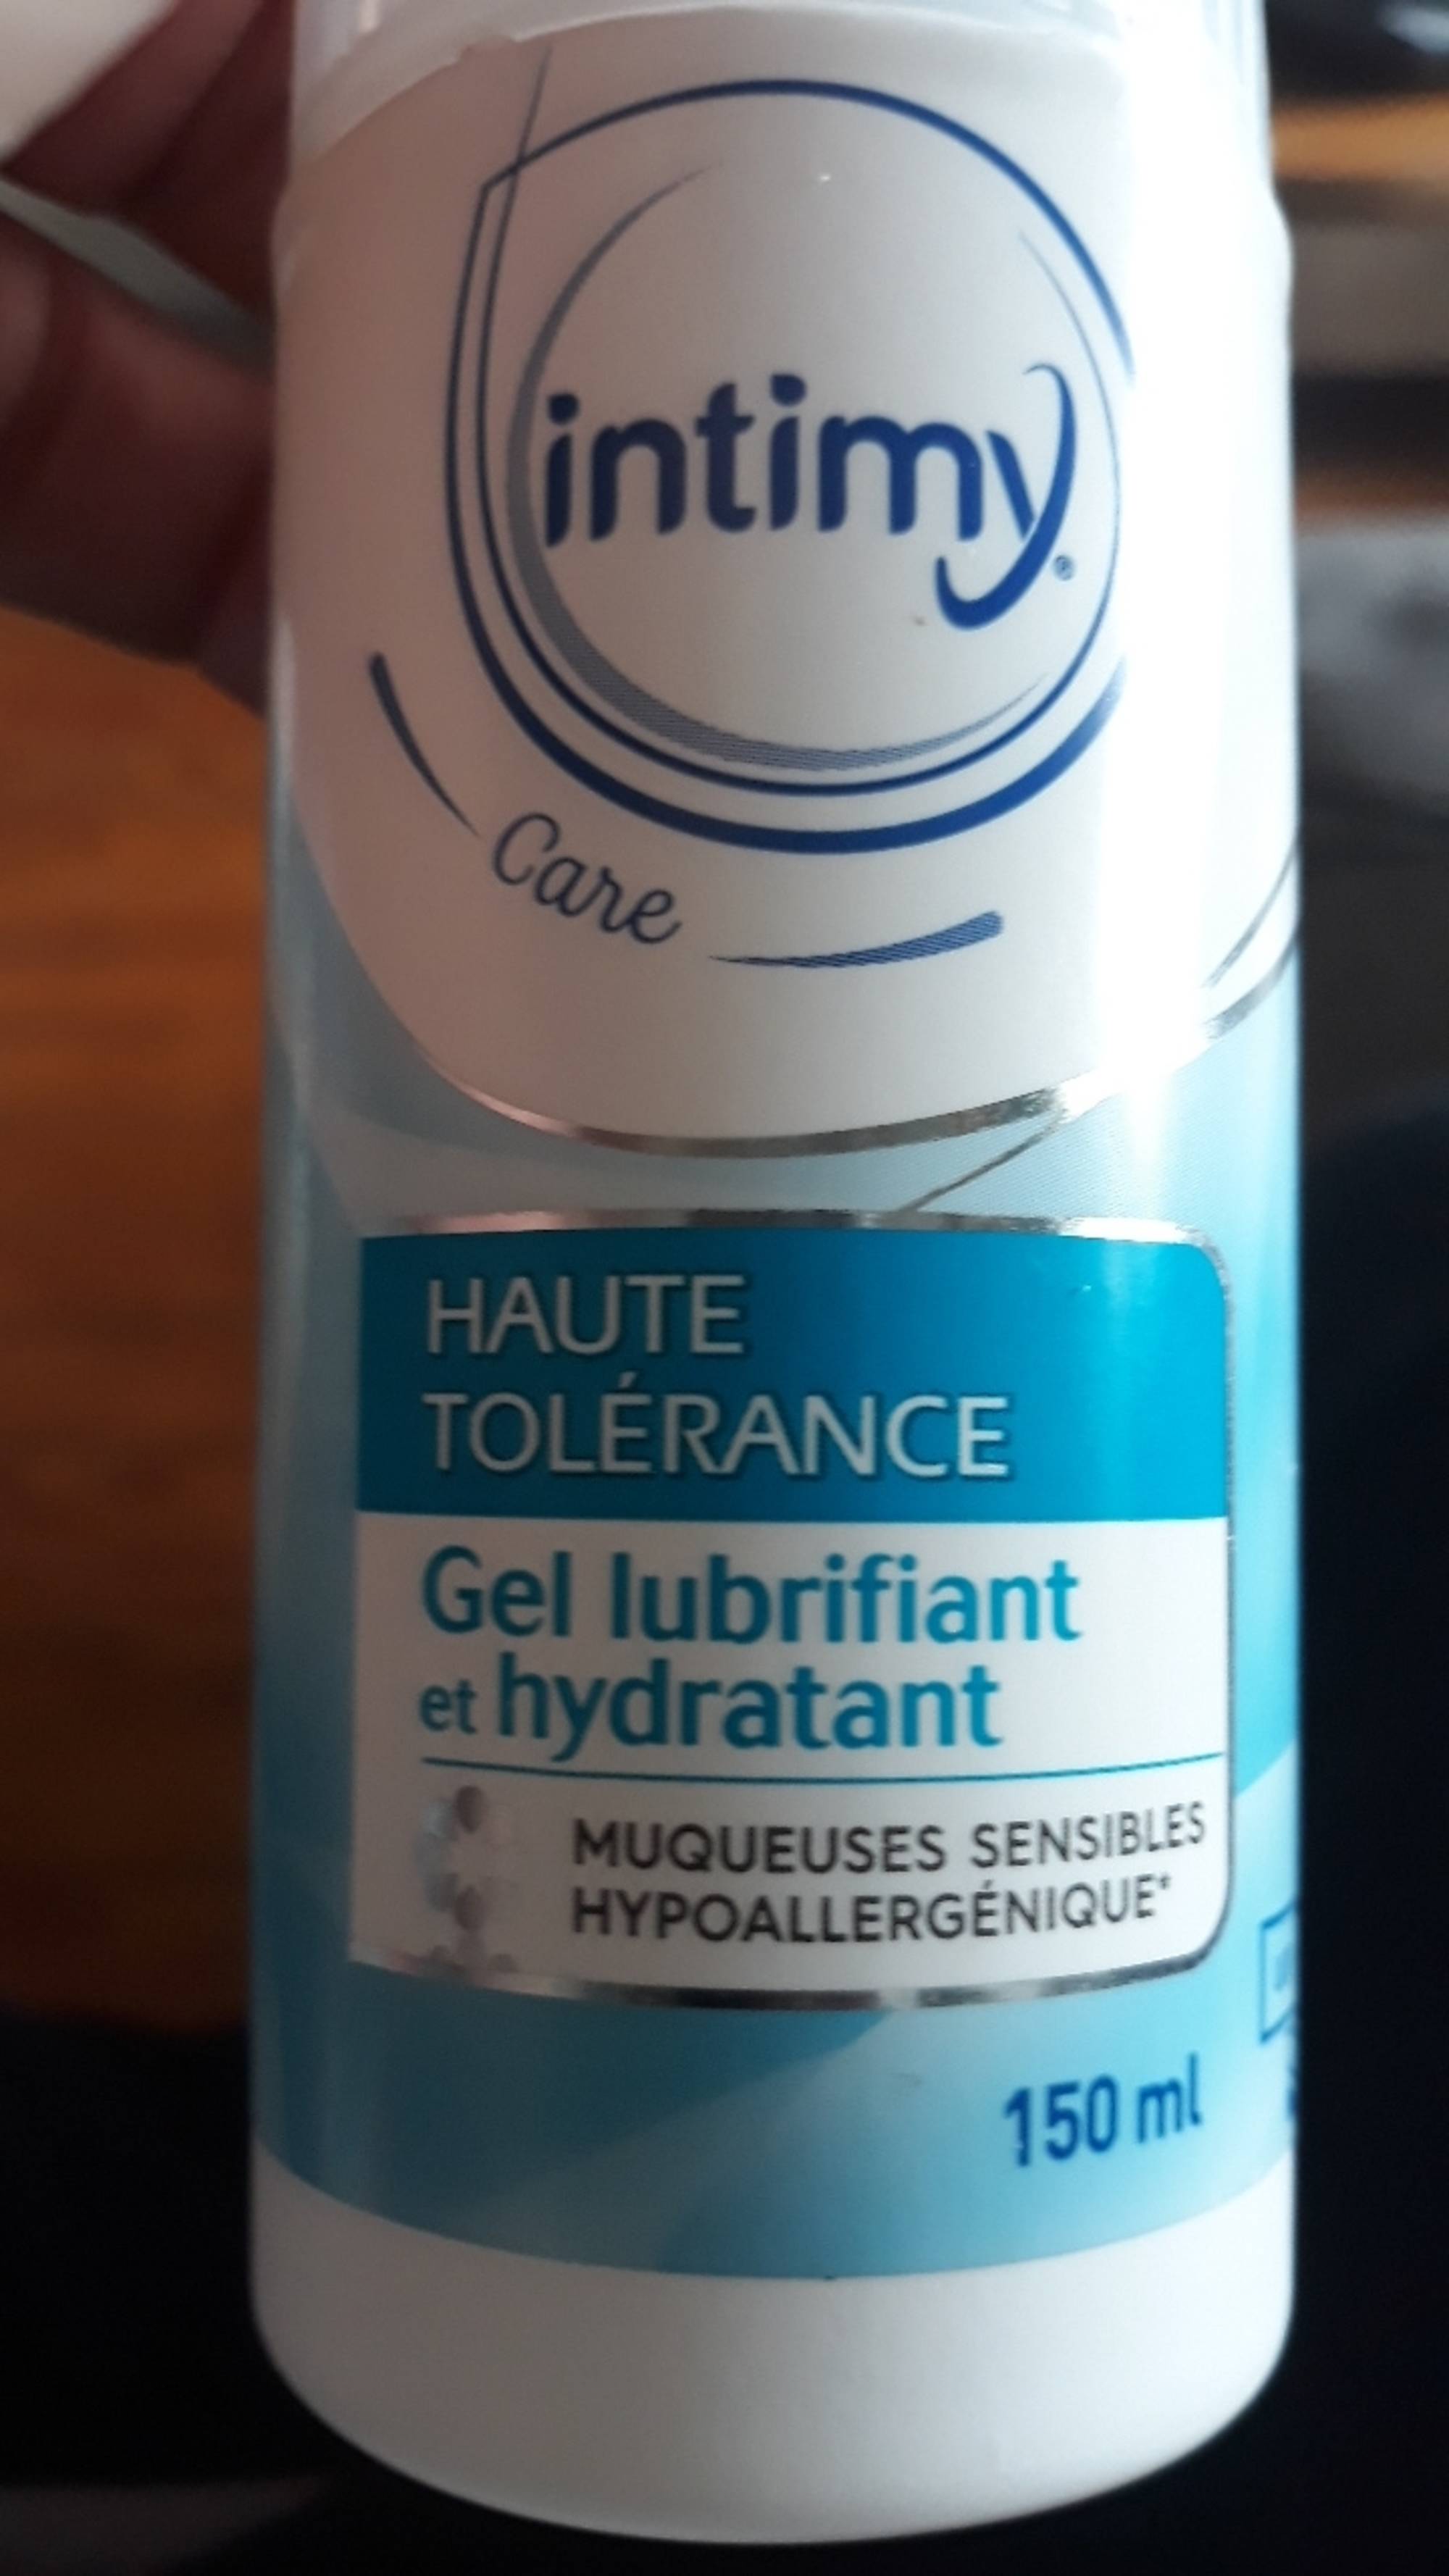 INTIMY - Haute tolérance - Gel lubrifiant et hydratant